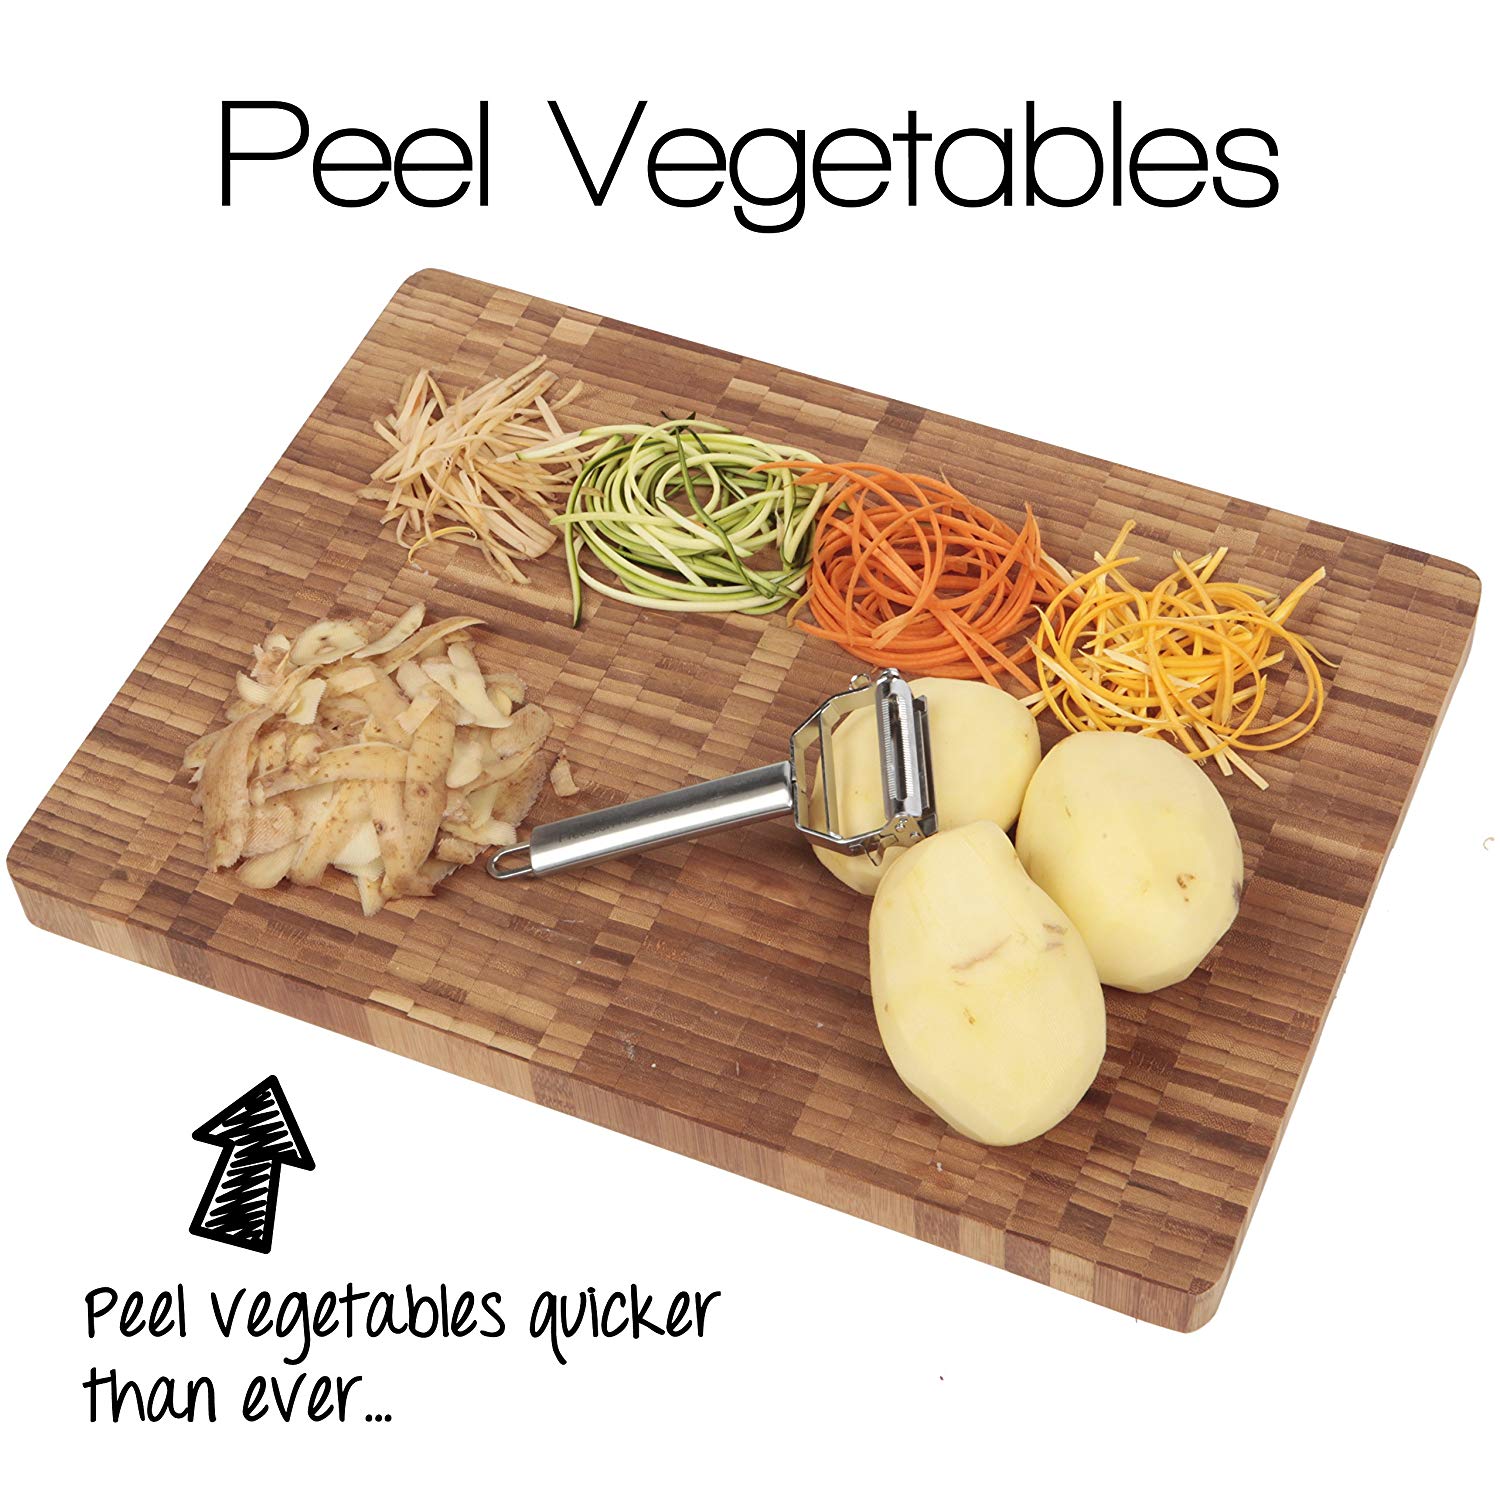 Eva Stainless Steel Vegetable Peeler - Julienne Slicer, Shredder